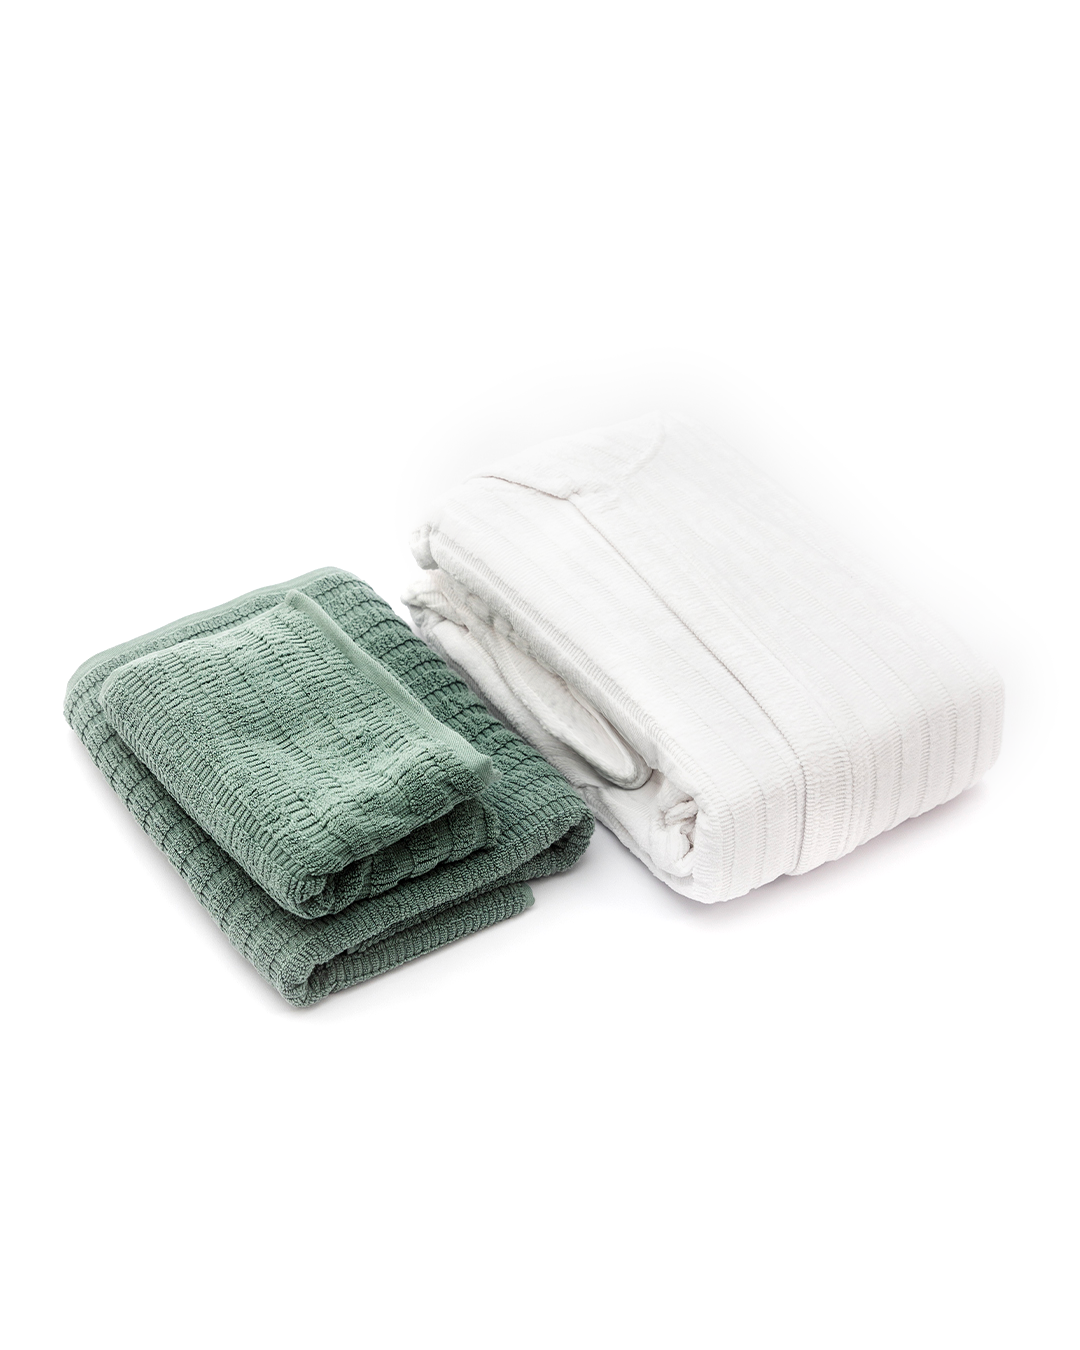 2 Soft Ribbed Towels + Bathrobe (3XL/4XL)